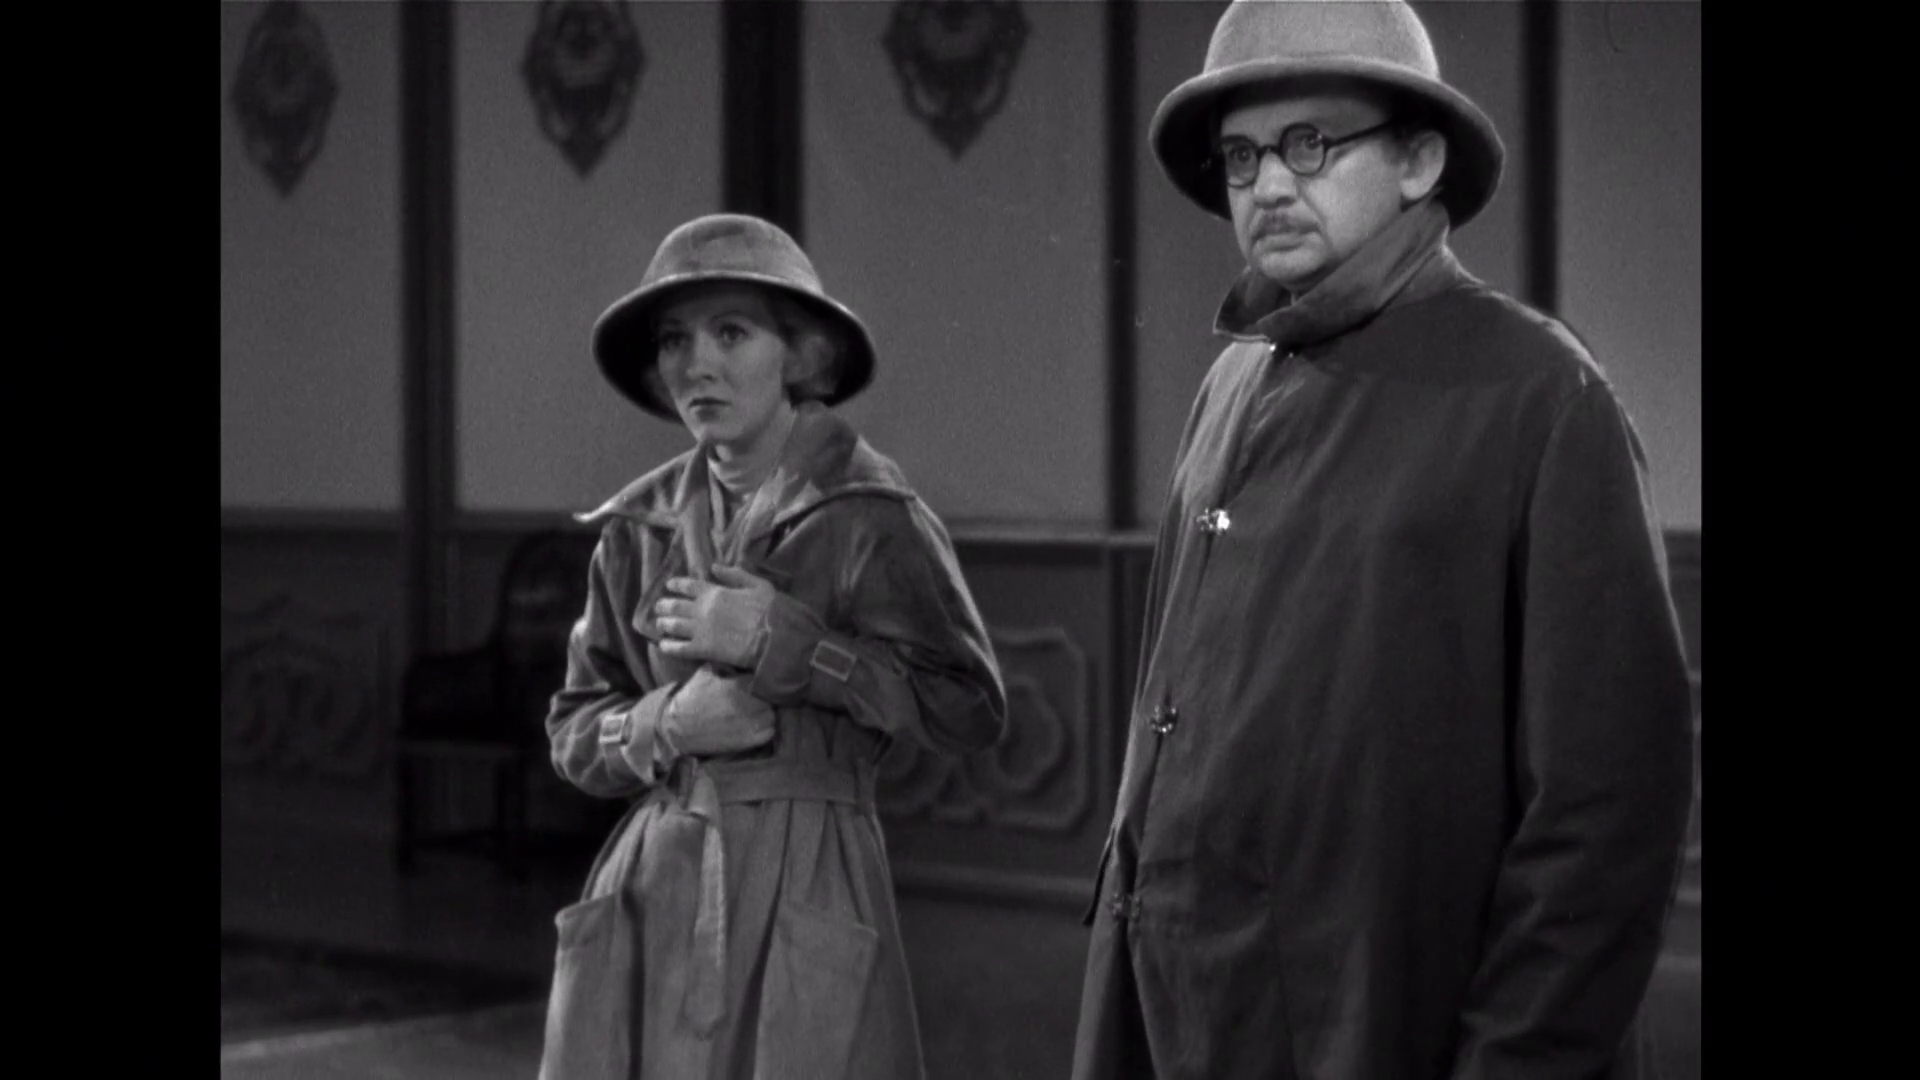 Karen Morley et Jean Hersholt dans le film américain The mask of Fu Manchu (Le masque d'or, 1932) de Charles Brabin